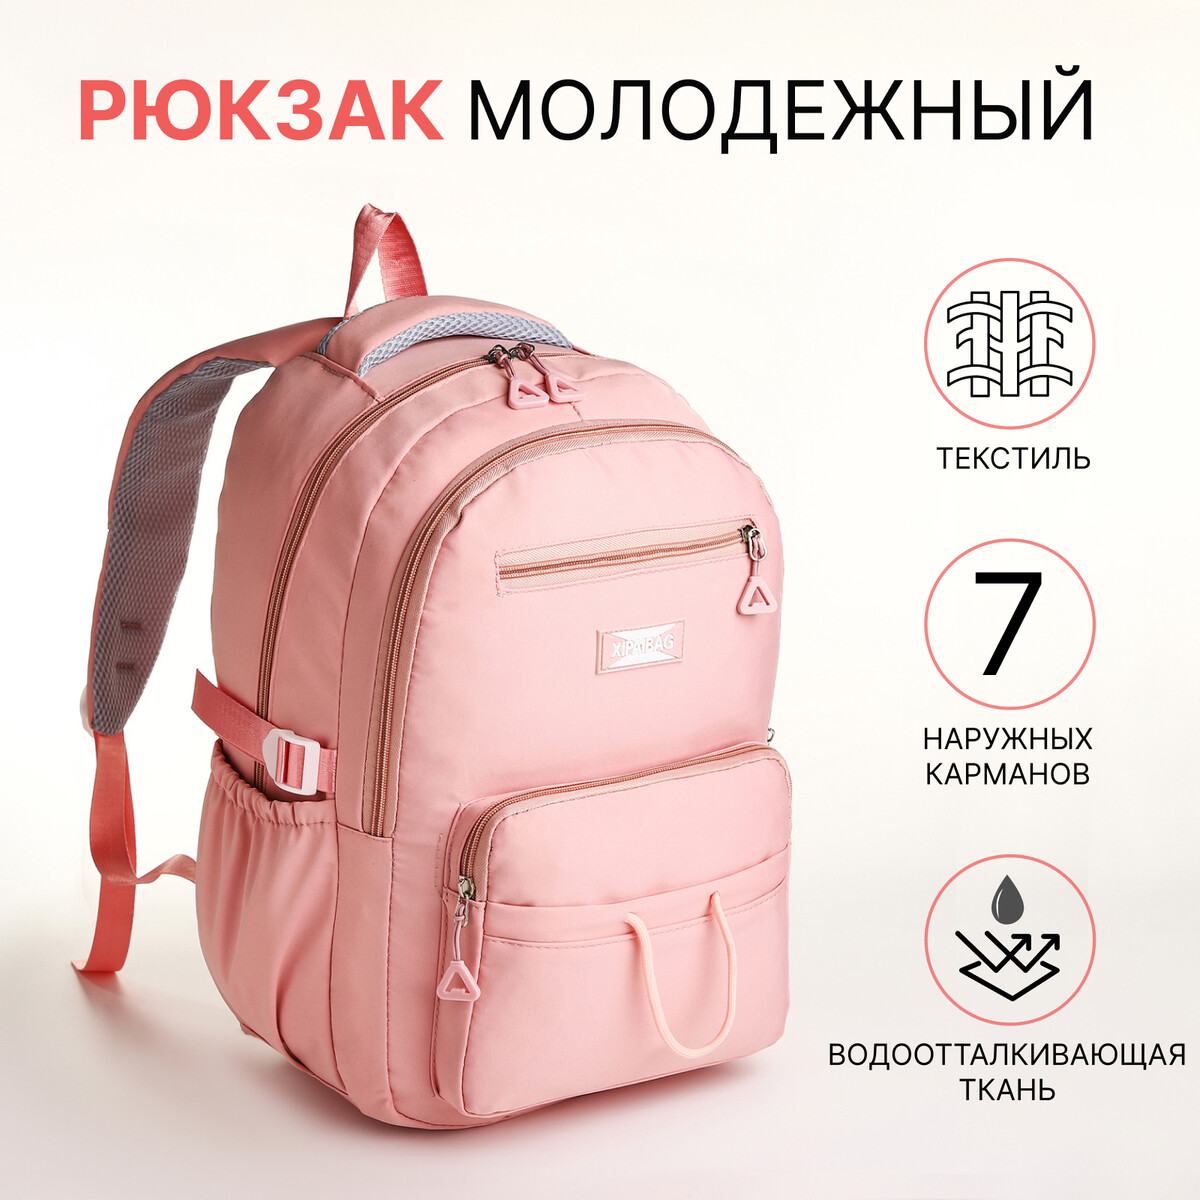 Рюкзак школьный из текстиля на молнии, 7 карманов, цвет розовый рюкзак школьный из текстиля на молнии 6 карманов